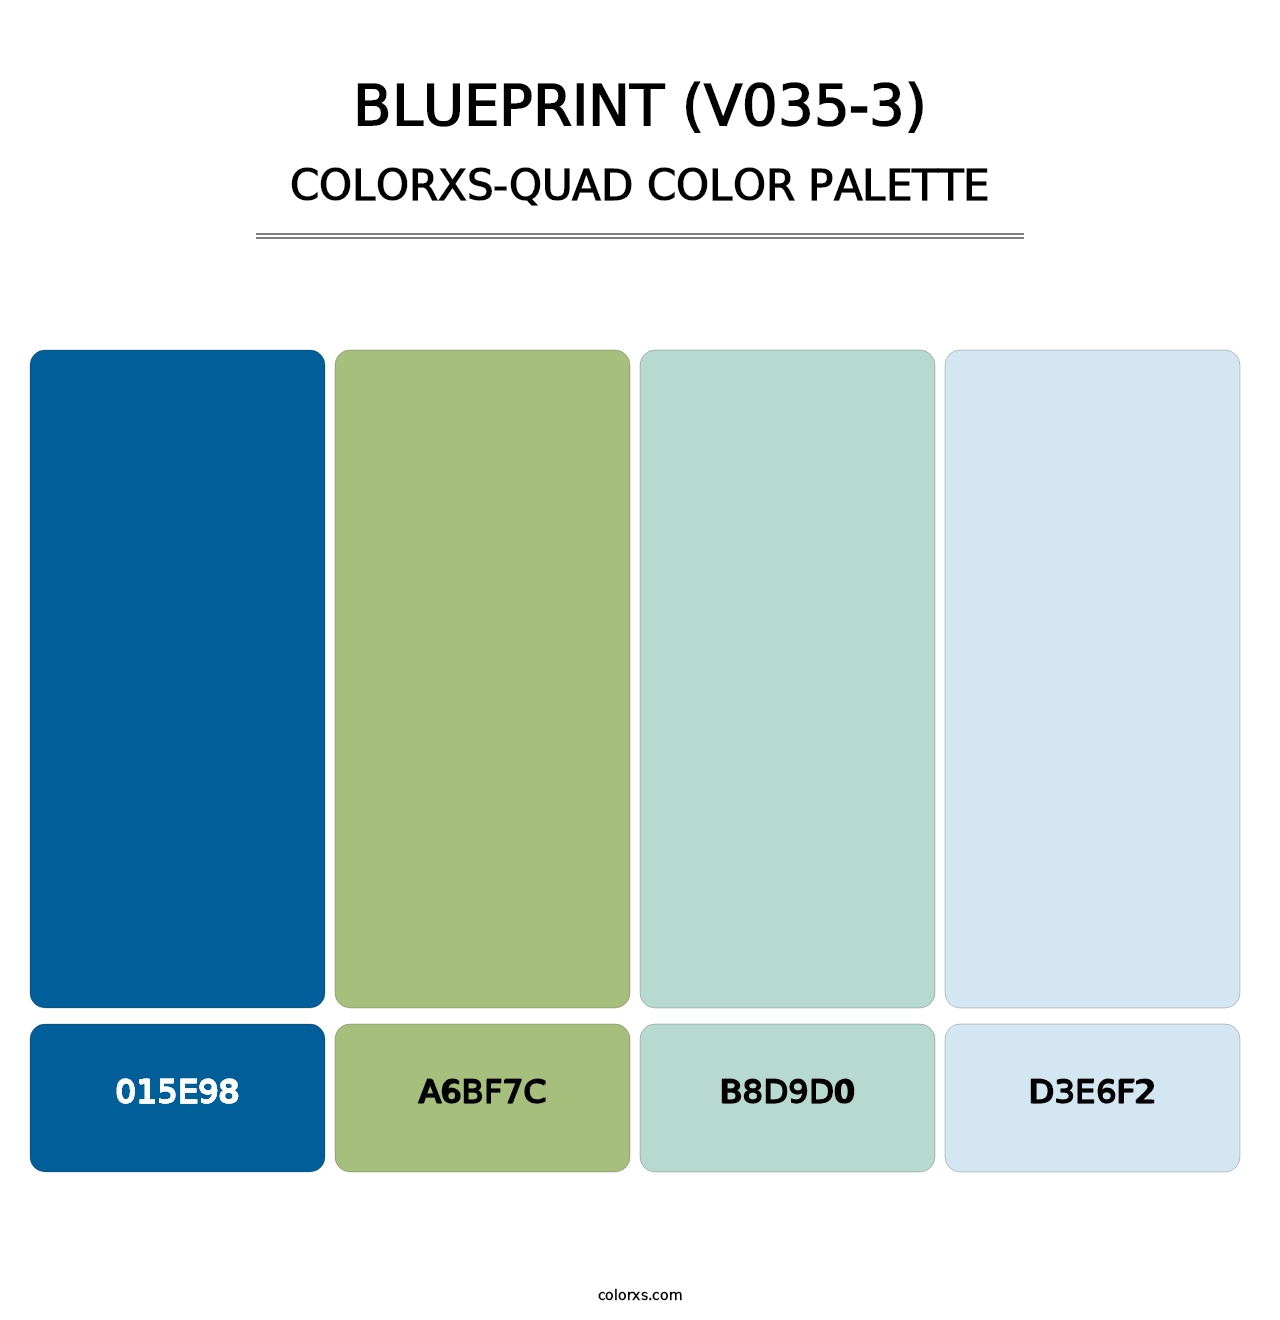 Blueprint (V035-3) - Colorxs Quad Palette